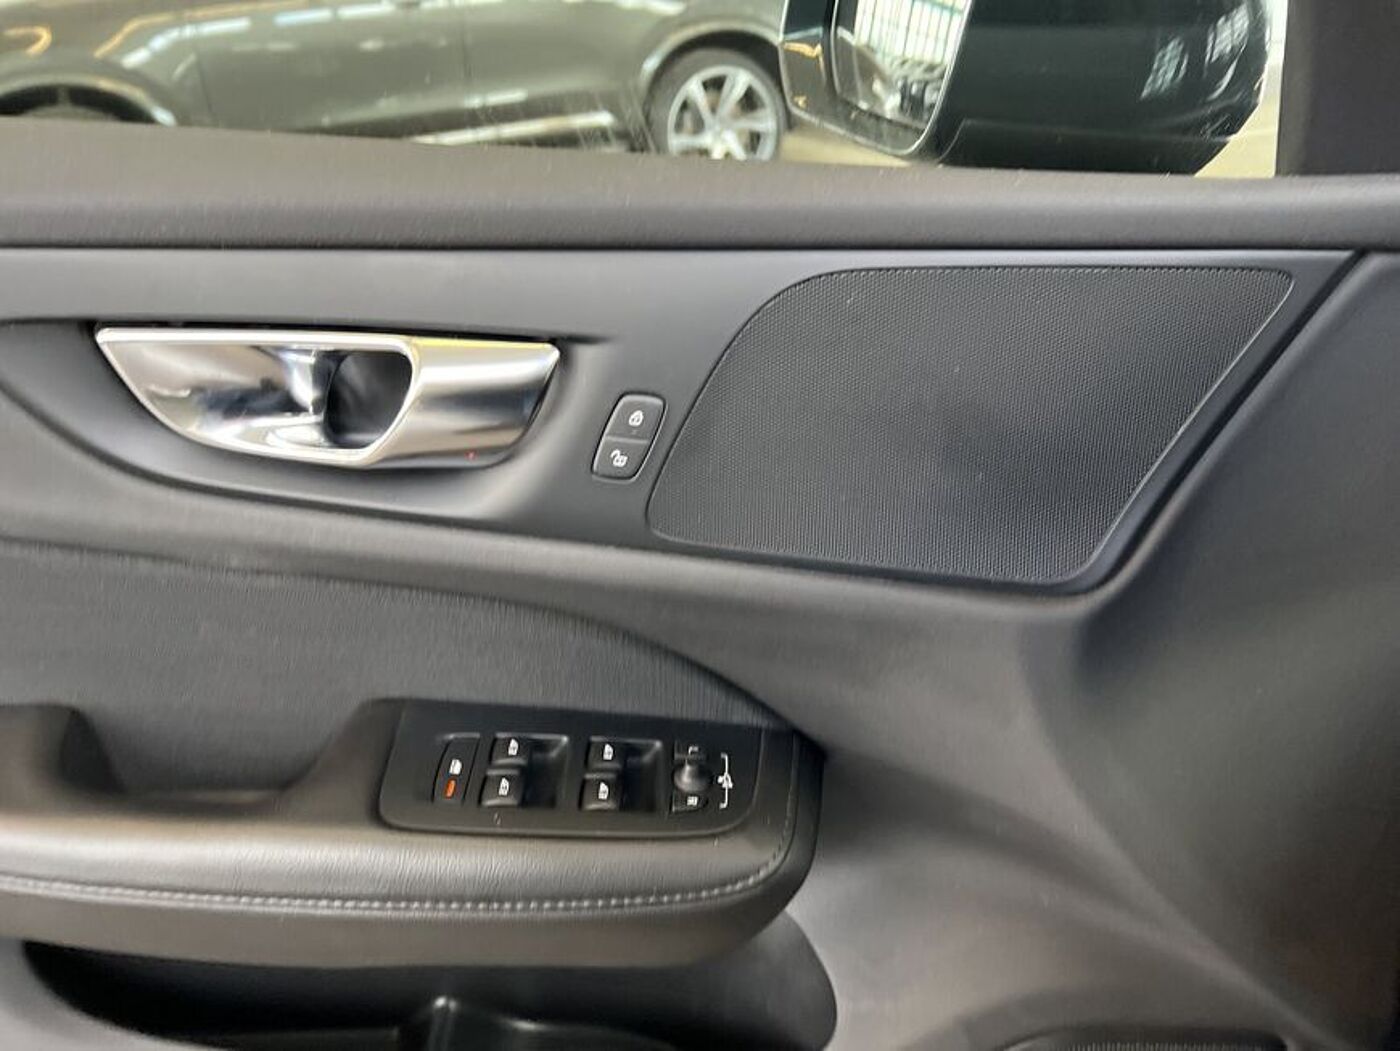 Volvo  D3  Aut Navi LED CD CarPlay Einparkhilfe